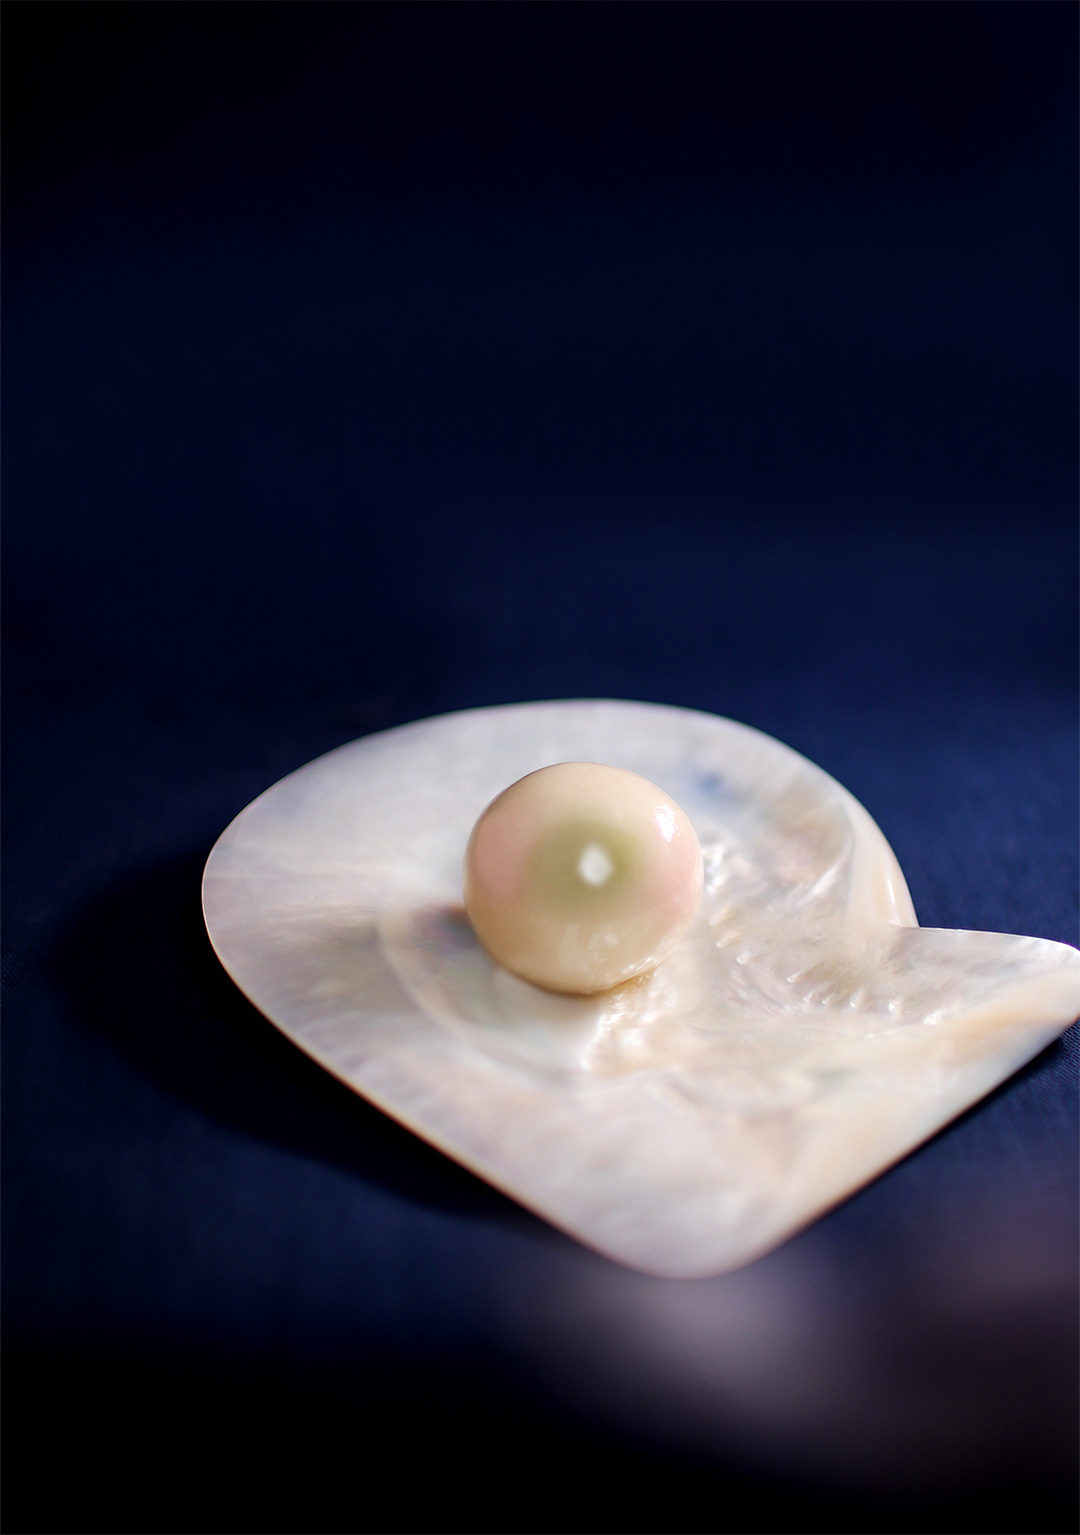 日本一真珠らしい和菓子『虹のしずく』が誕生　
11月3日～6日のジュエリーフェアへ来場予約の方に無料で提供！
～真珠スペシャリストと老舗和菓子職人がコラボ～